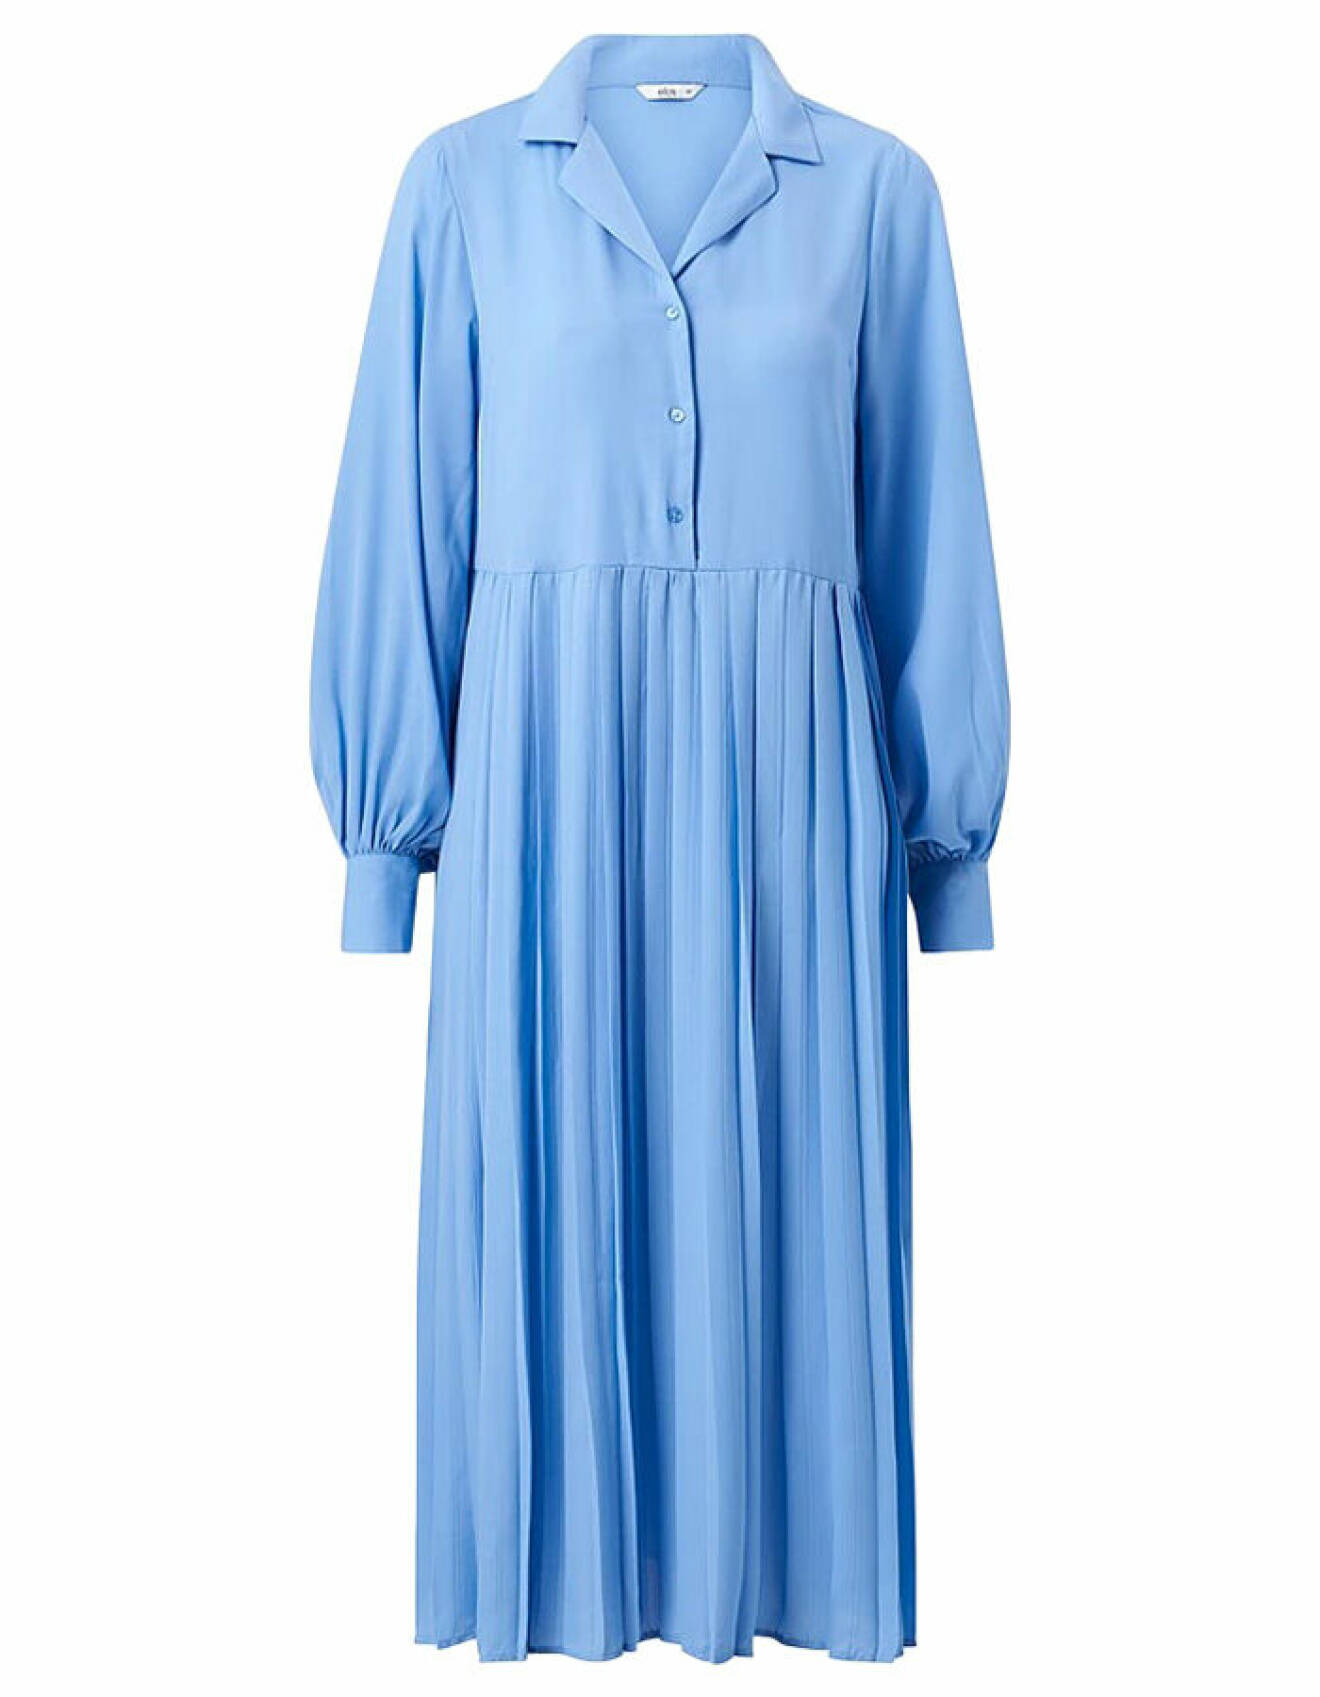 ljusblå skjortklänning från ellos collection